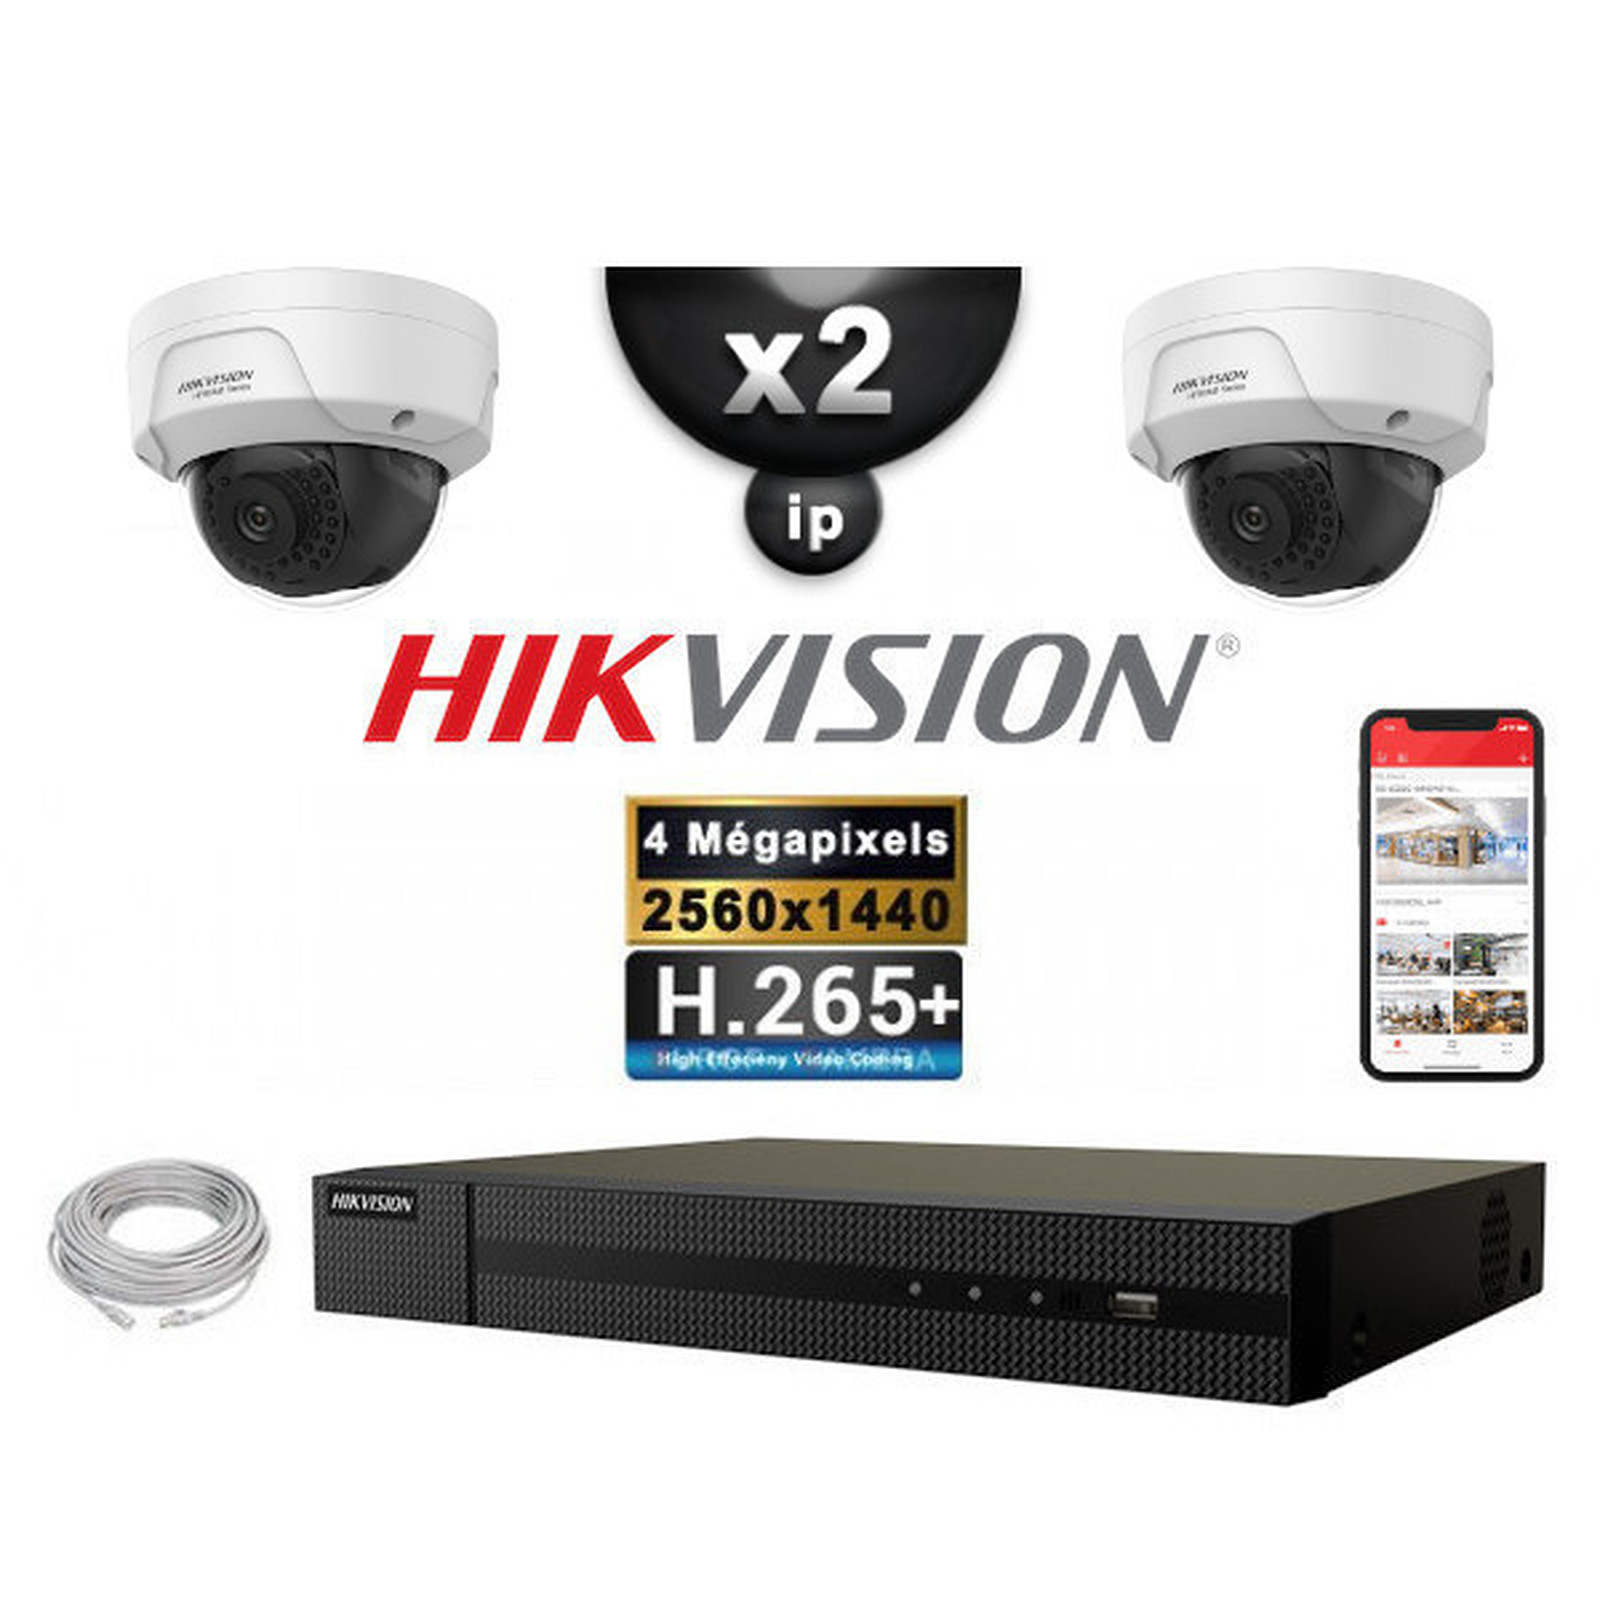 HIKVISION Kit Video Surveillance PRO IP : 2x Cameras POE Domes IR 30M 4 MP + Enregistreur NVR 4 canaux H265+ 1000 Go - Camera de surveillance Hikvision